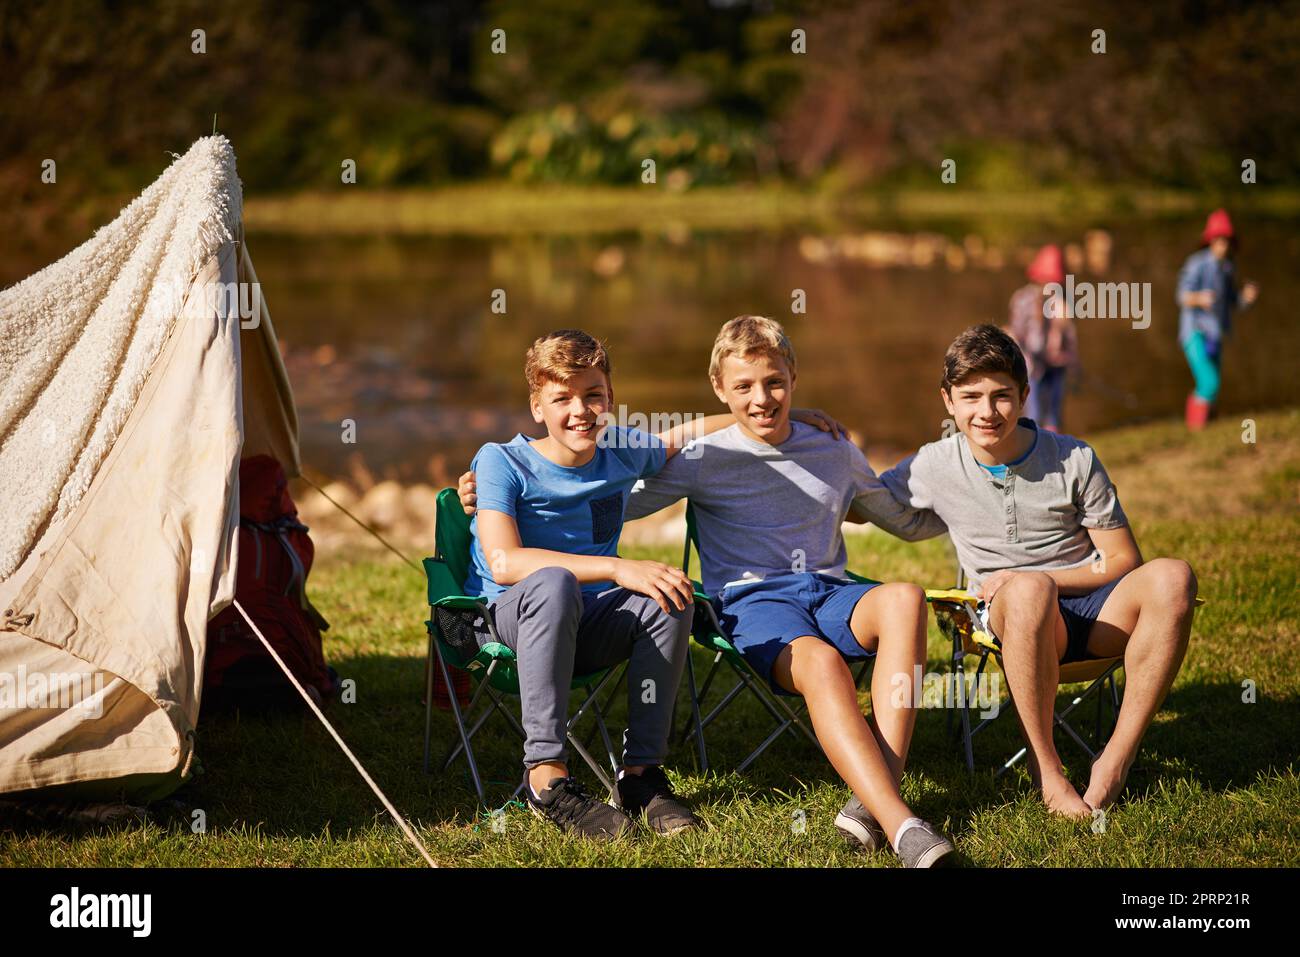 Notre meilleur voyage en camping. Un groupe de jeunes garçons en camping. Banque D'Images